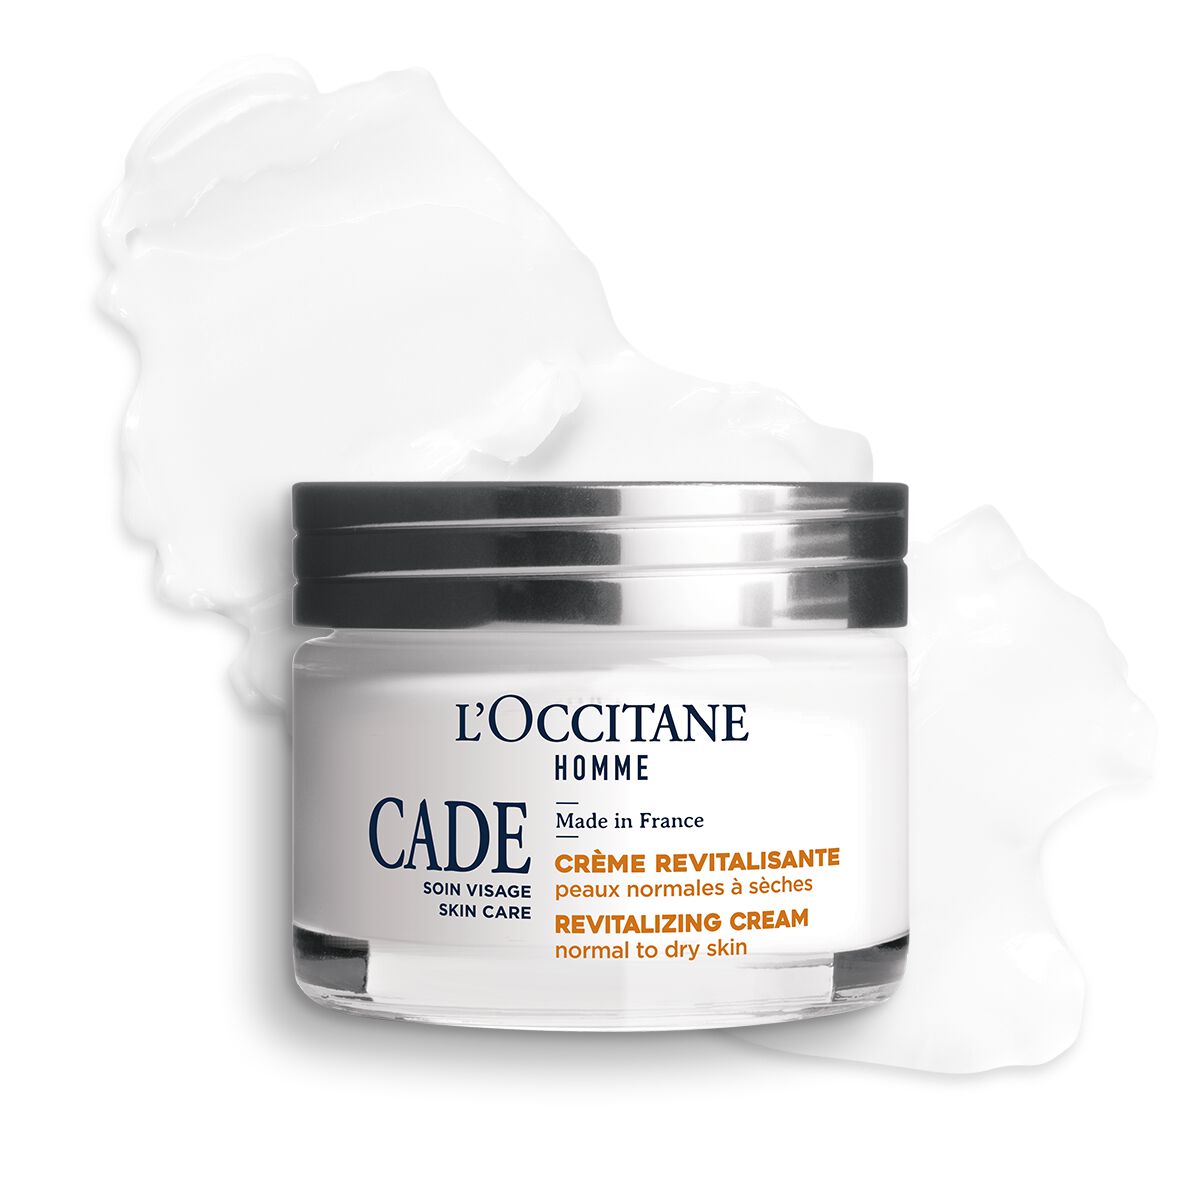 L'occitane Cade Revitalizing Cream